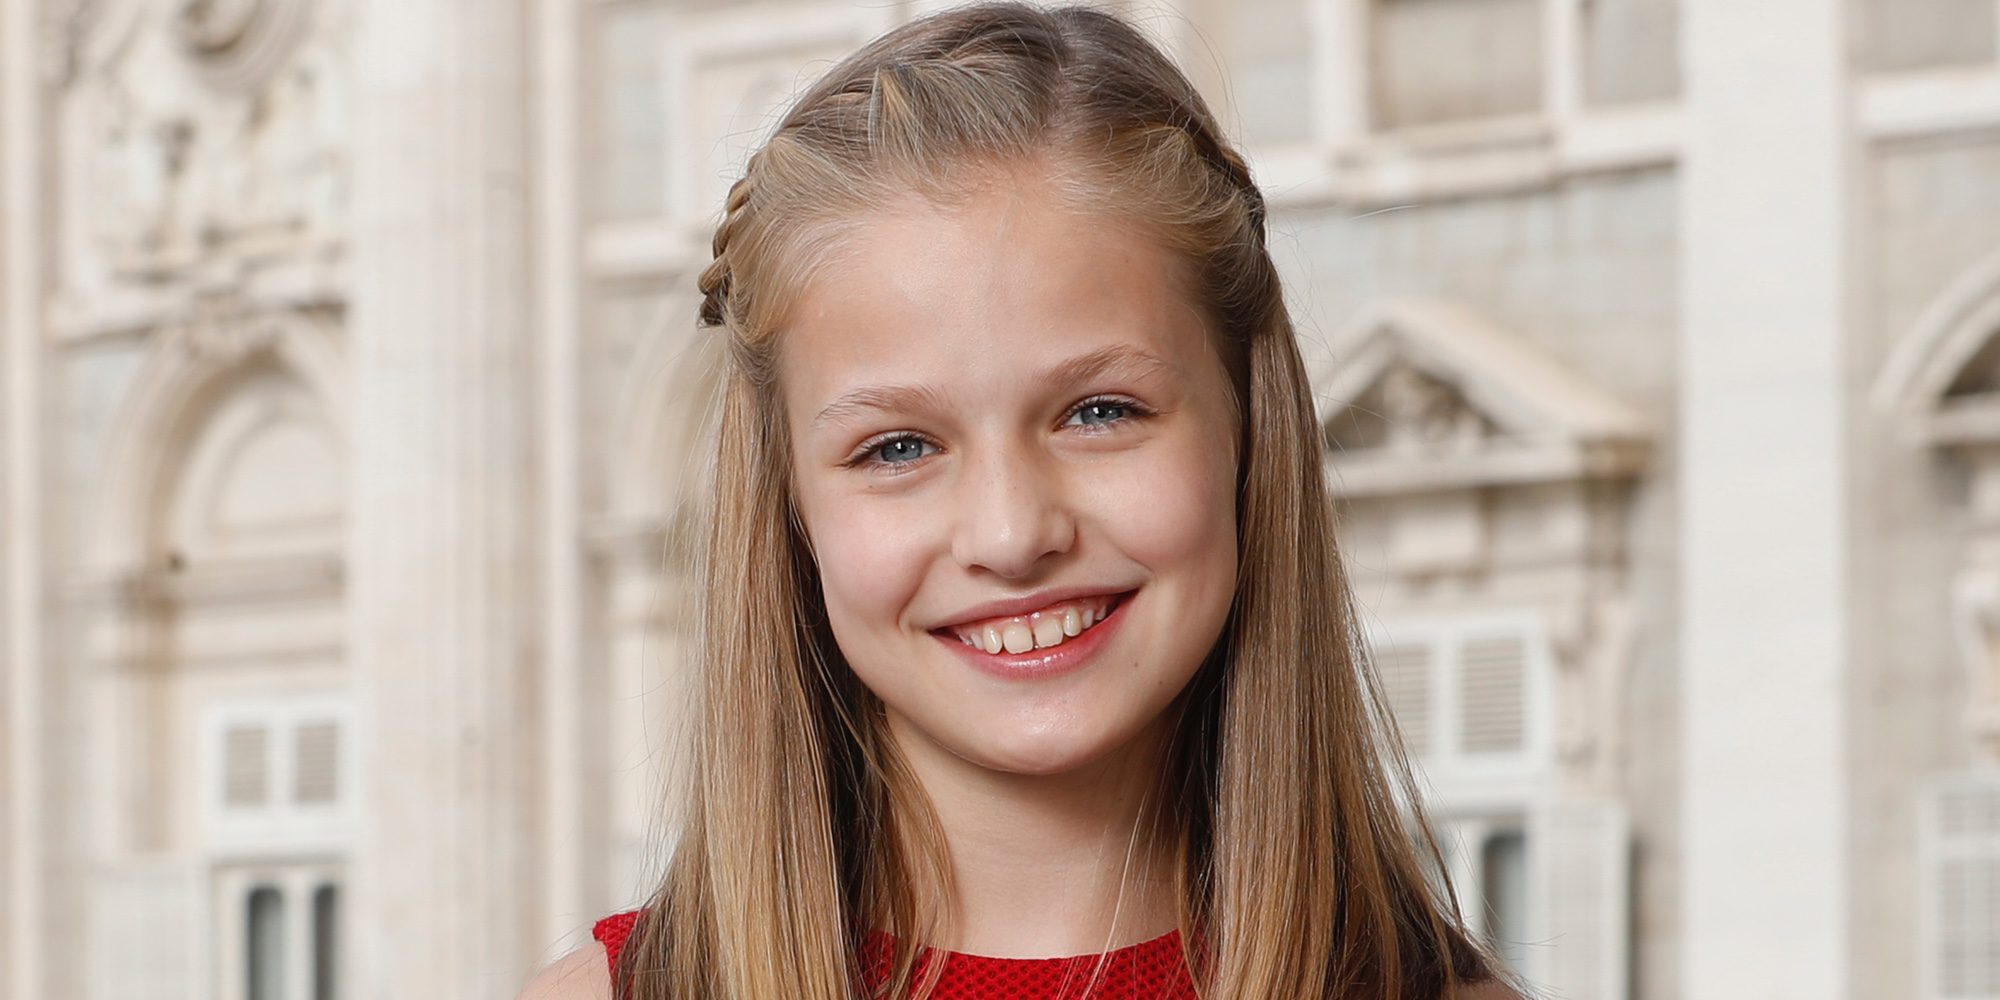 La Princesa Leonor estrena su primer retrato oficial en solitario a los 12 años